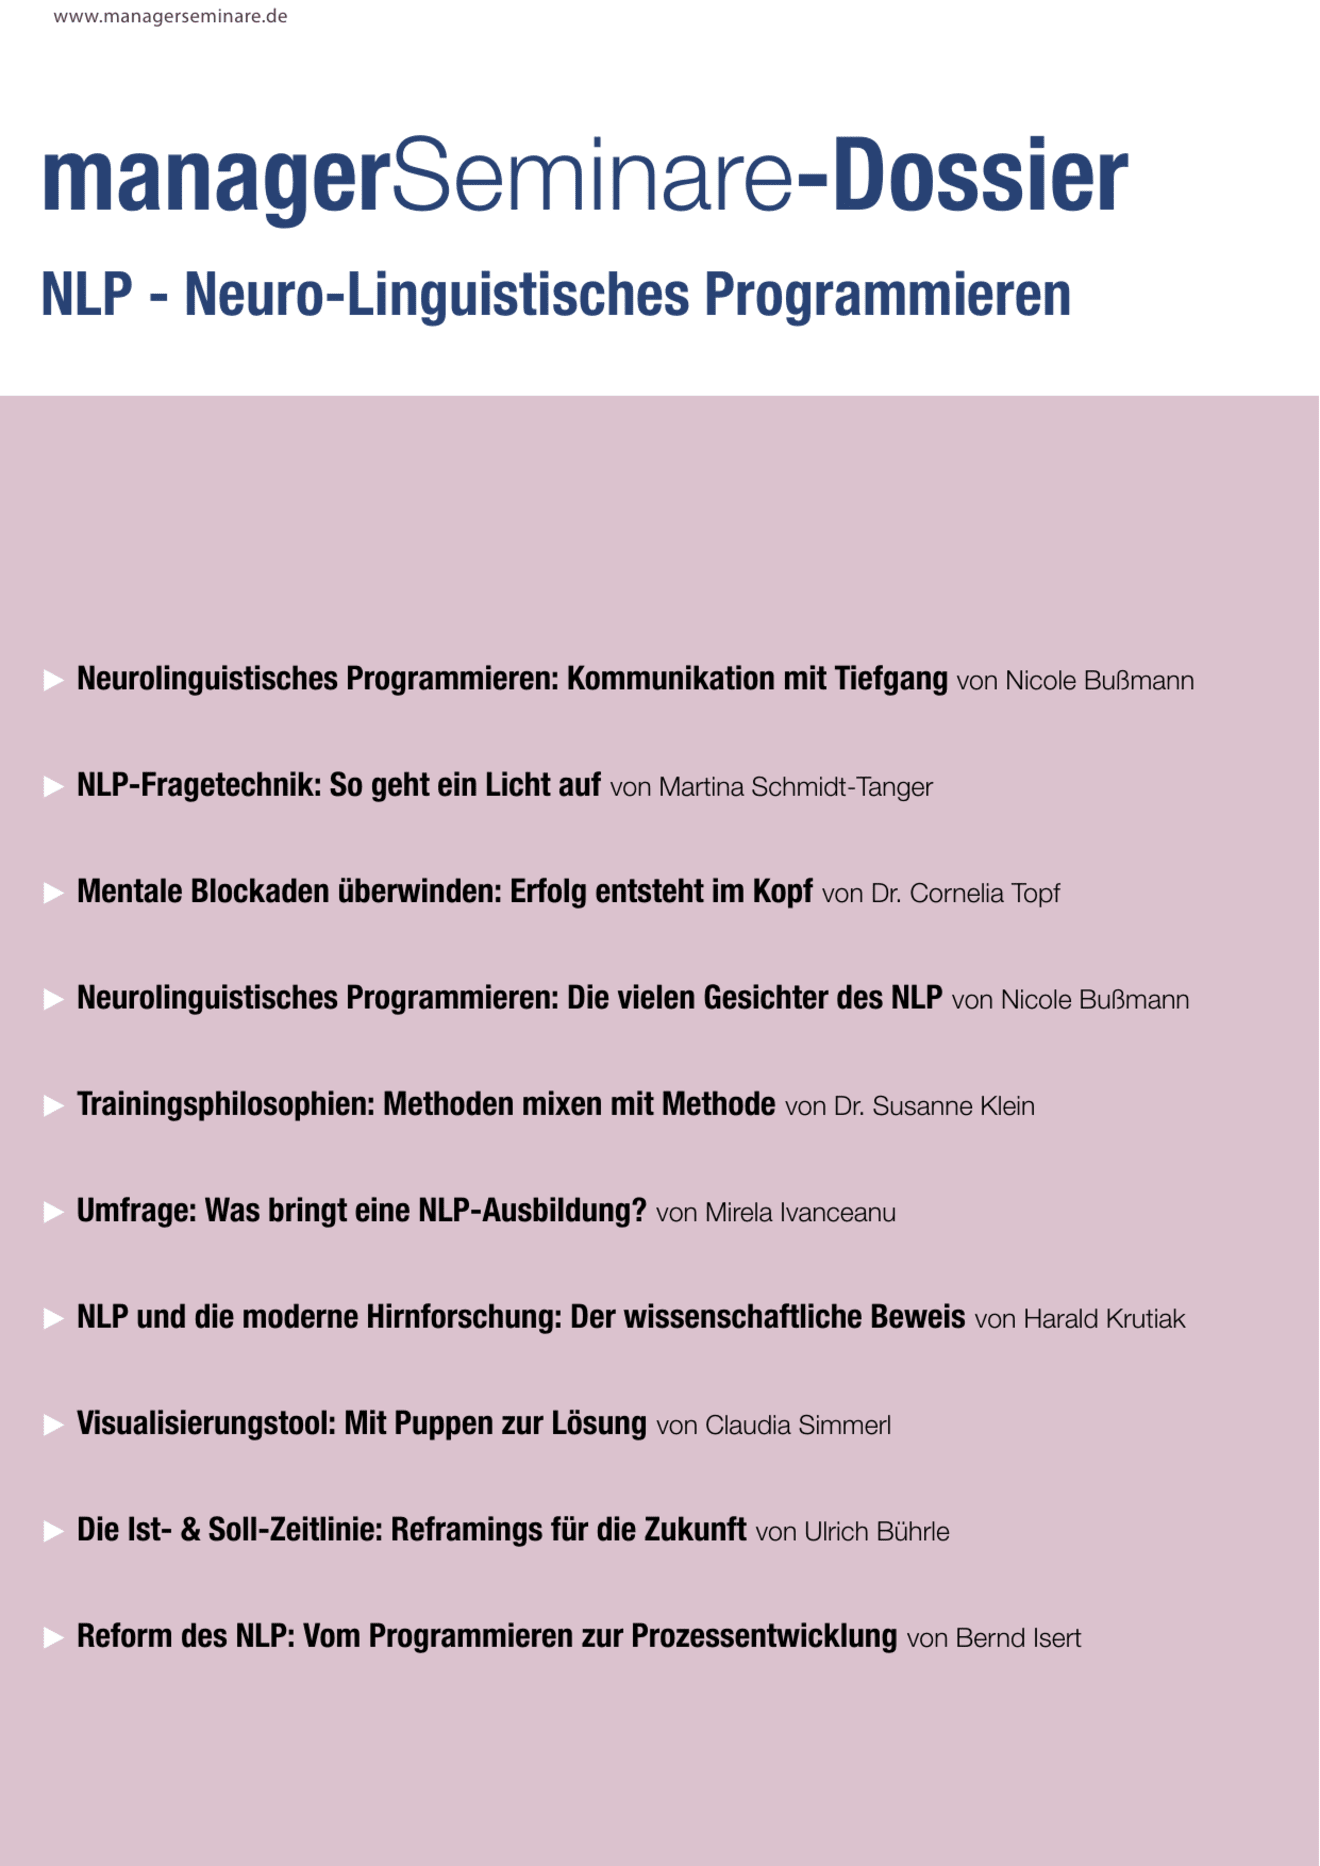 Dossier NLP - Neurolinguistisches Programmieren